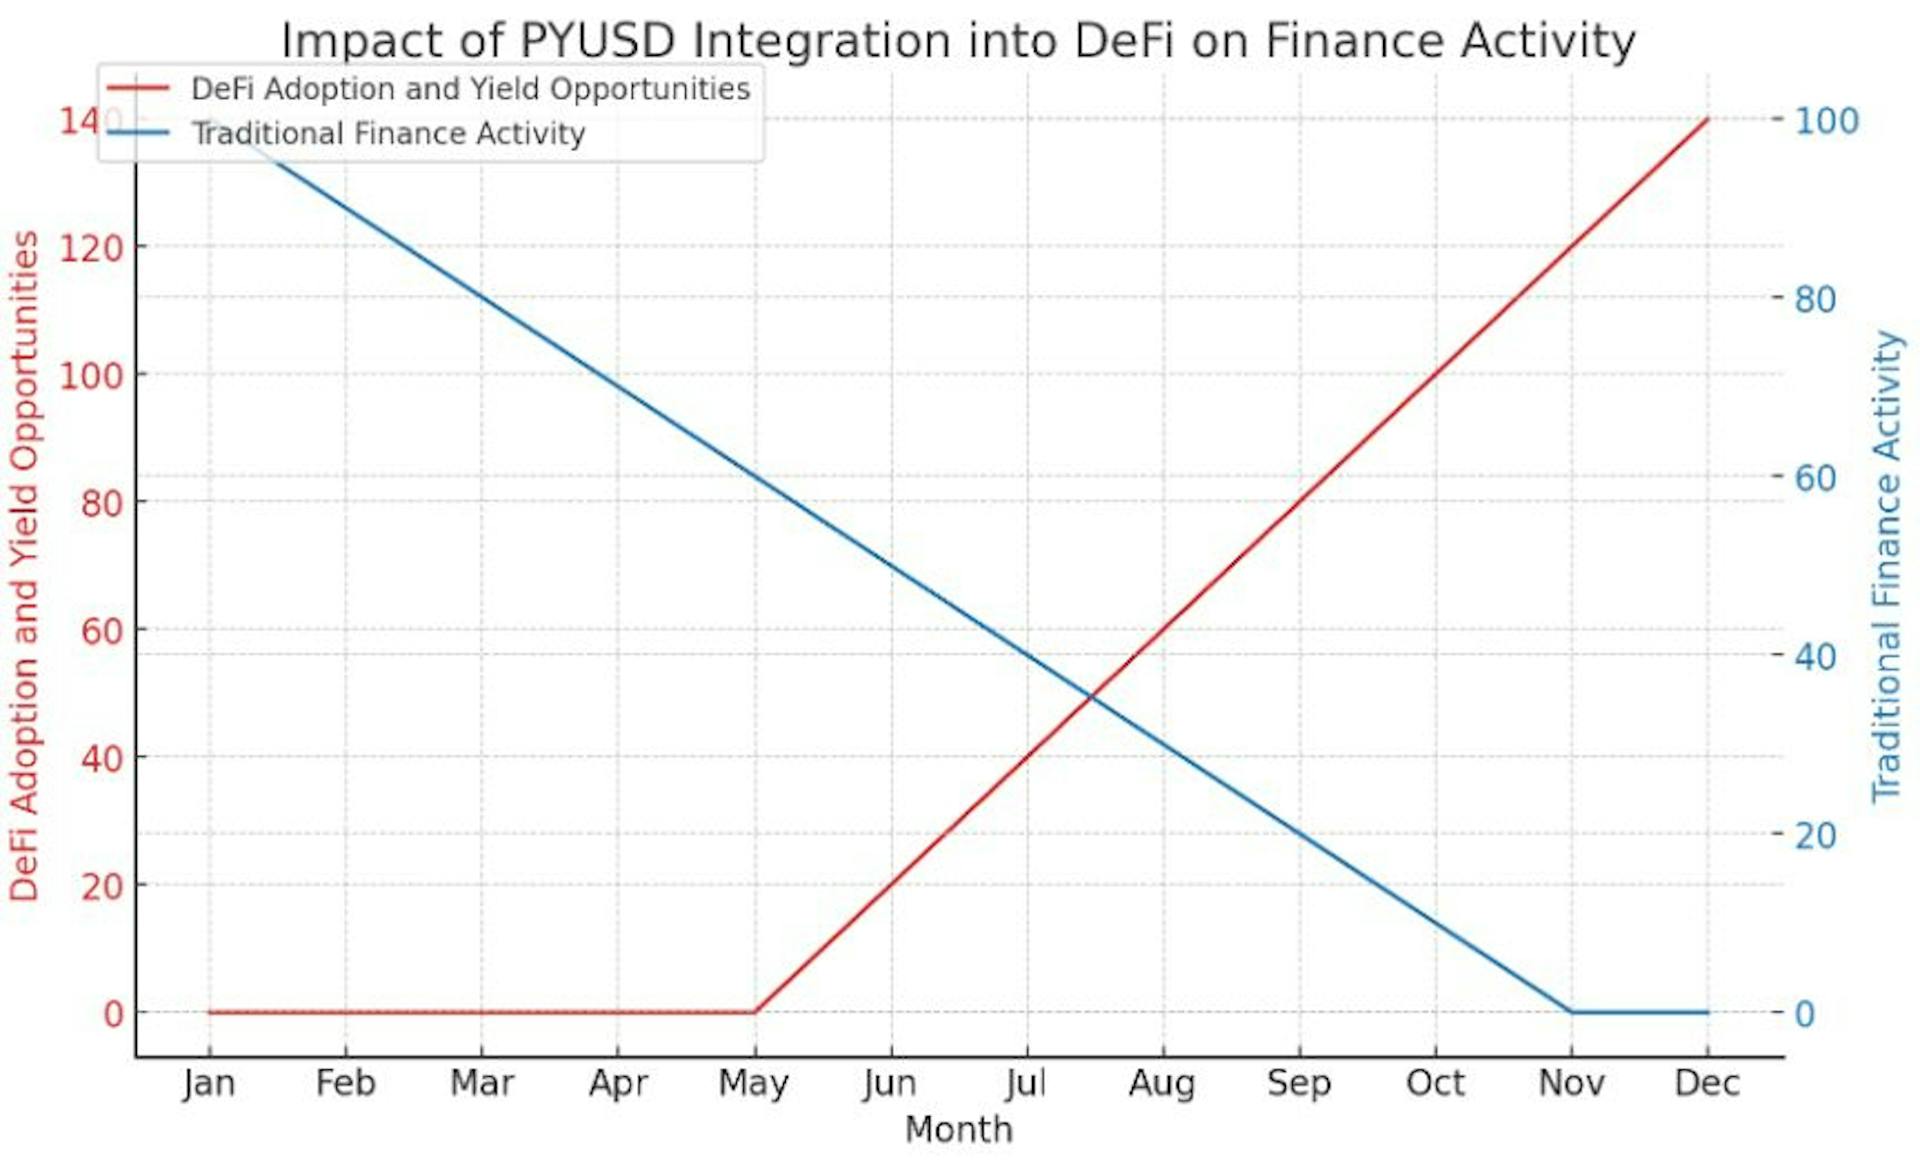 Grafik, PYUSD'nin DeFi ekosistemine entegrasyonunun varsayımsal etkisini görselleştiriyor ve zaman içinde DeFi'nin benimsenmesinde ve getiri fırsatlarında önemli bir artış olduğunu gösteriyor.